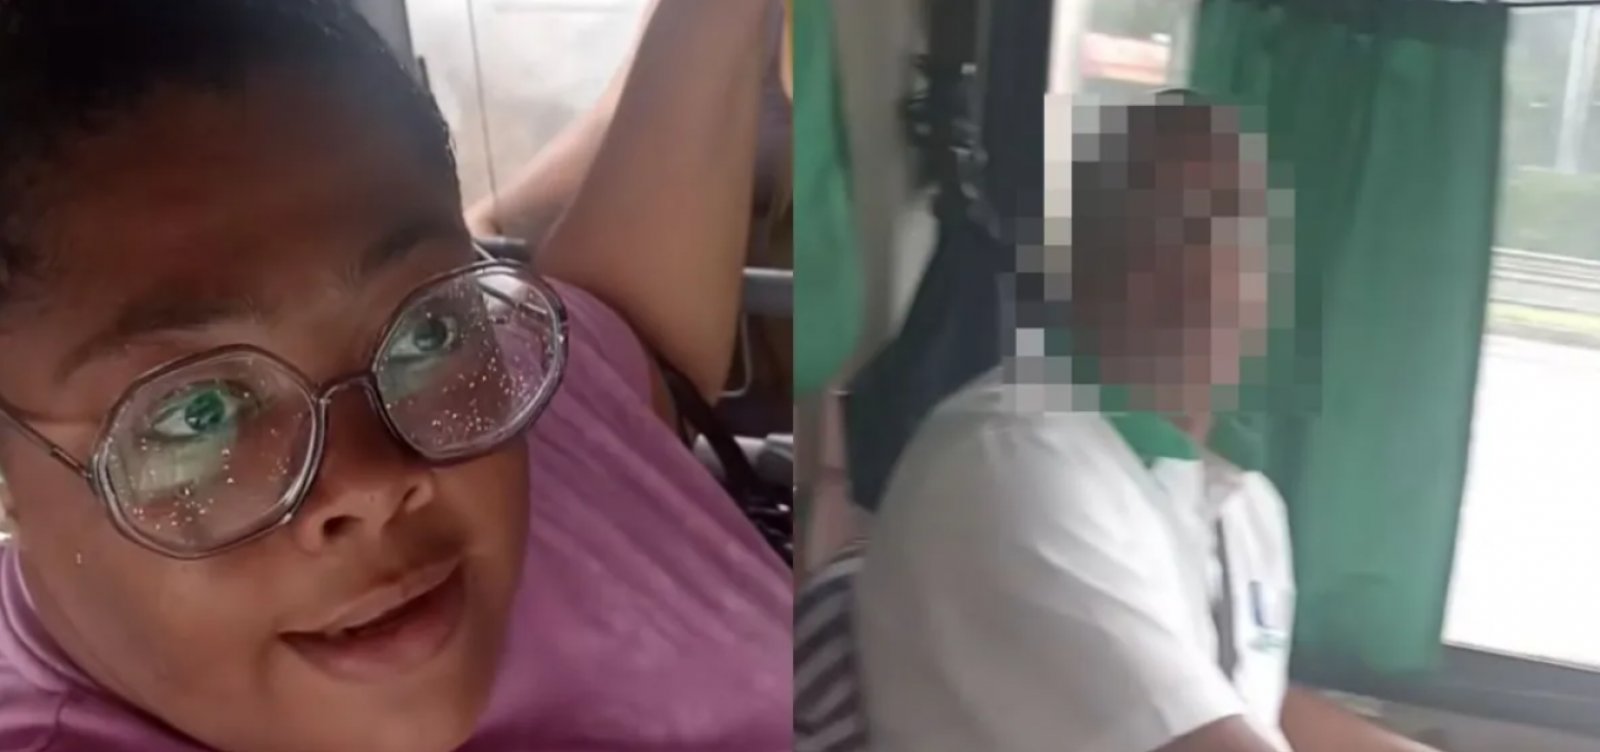 Passageira alega ter sido vítima de gordofobia em ônibus de Salvador 